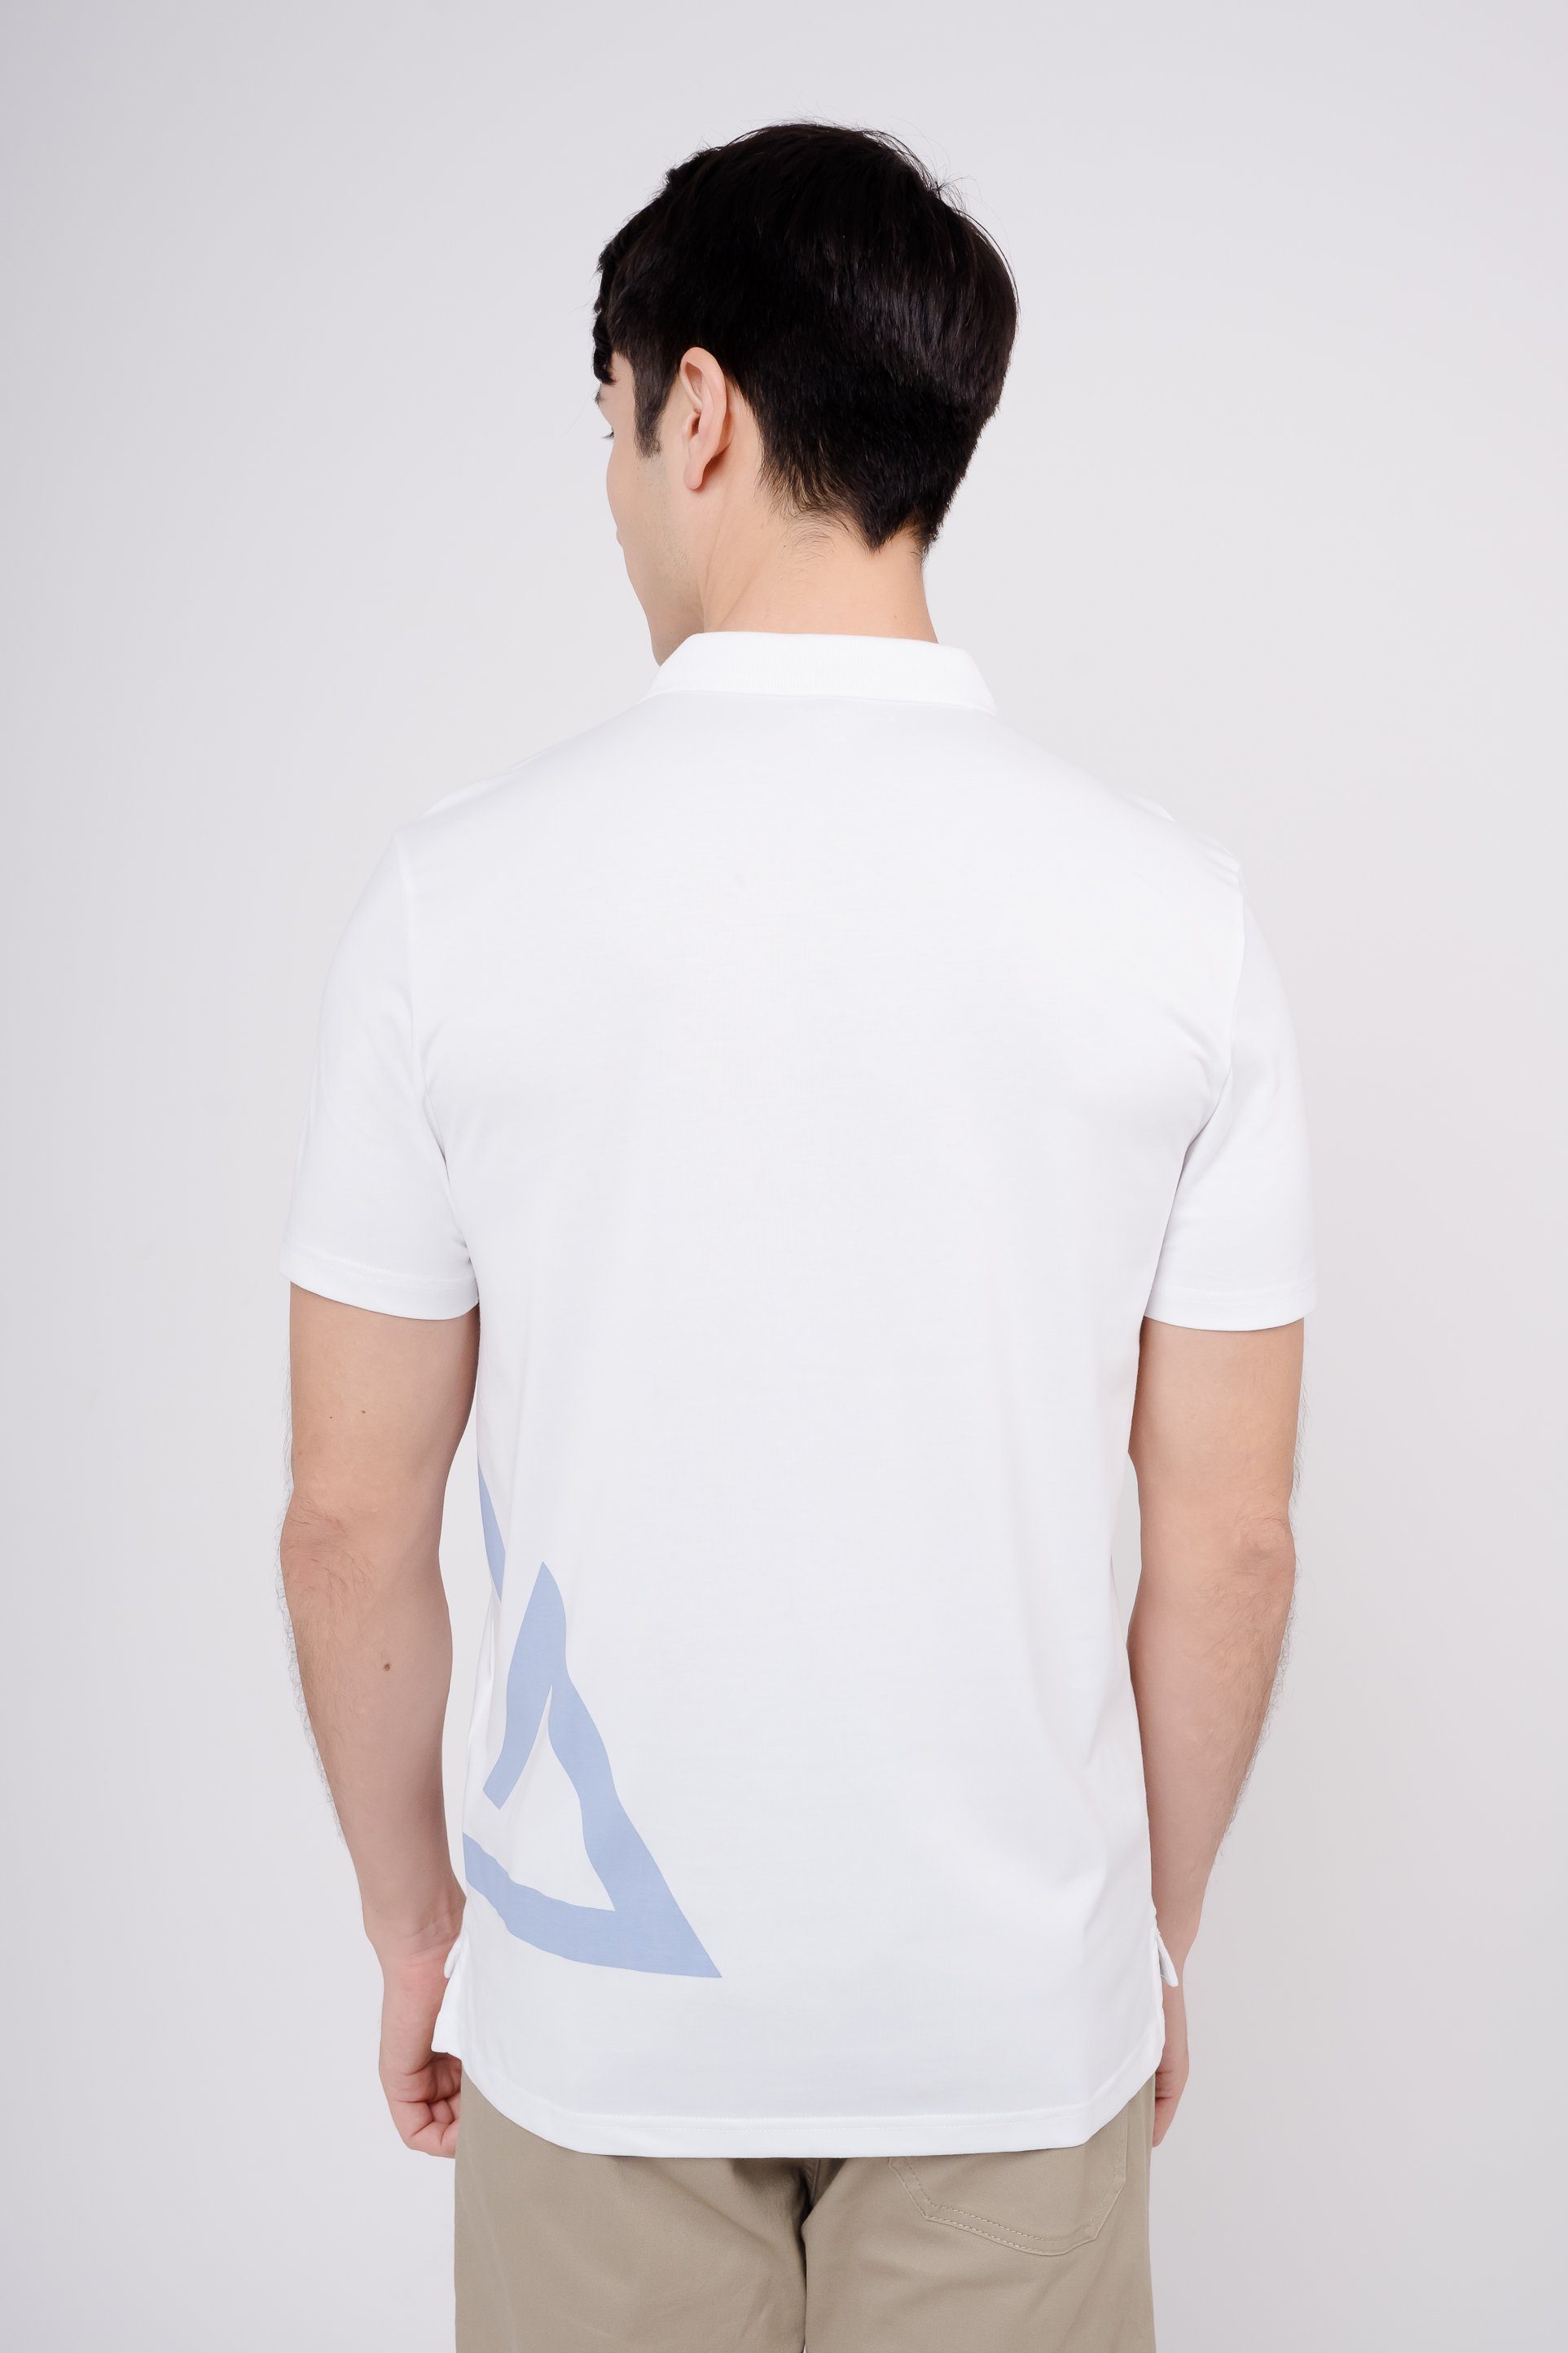 praktischer GIORDANO mit Poloshirt weiß Quick-Dry-Funktion